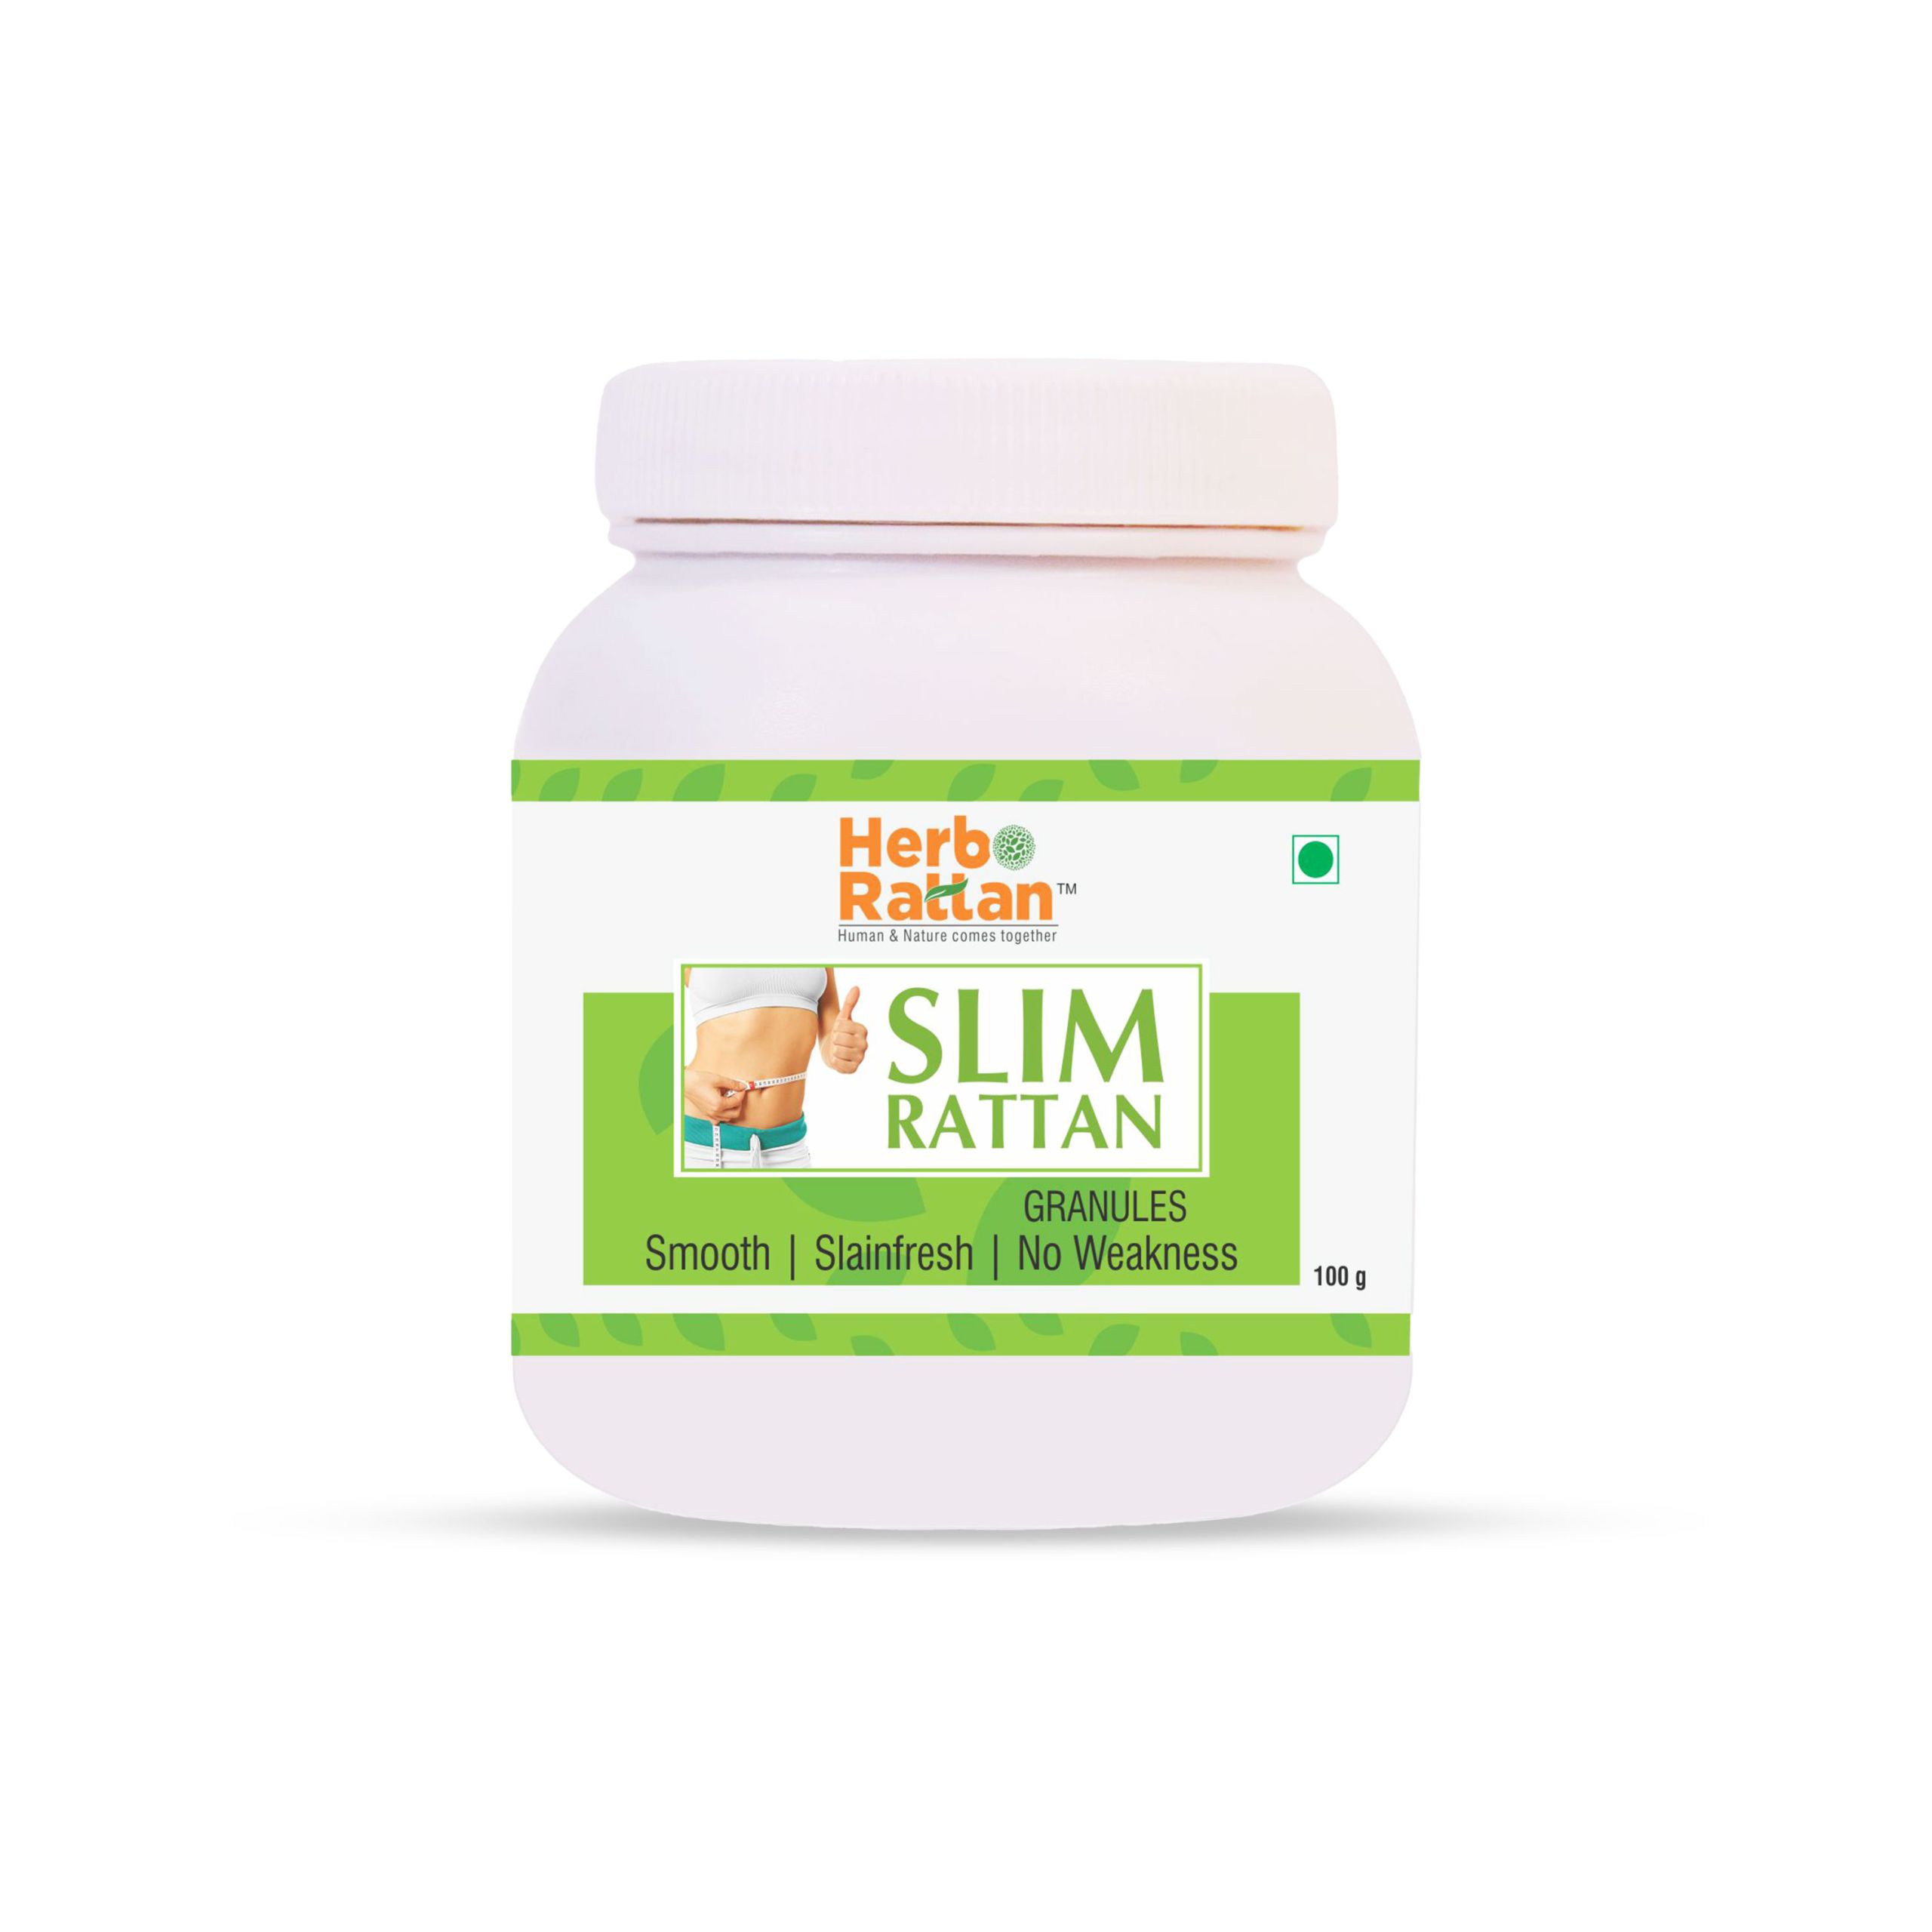 Herbo Rattan Slim Rattan Granules – 100 gm